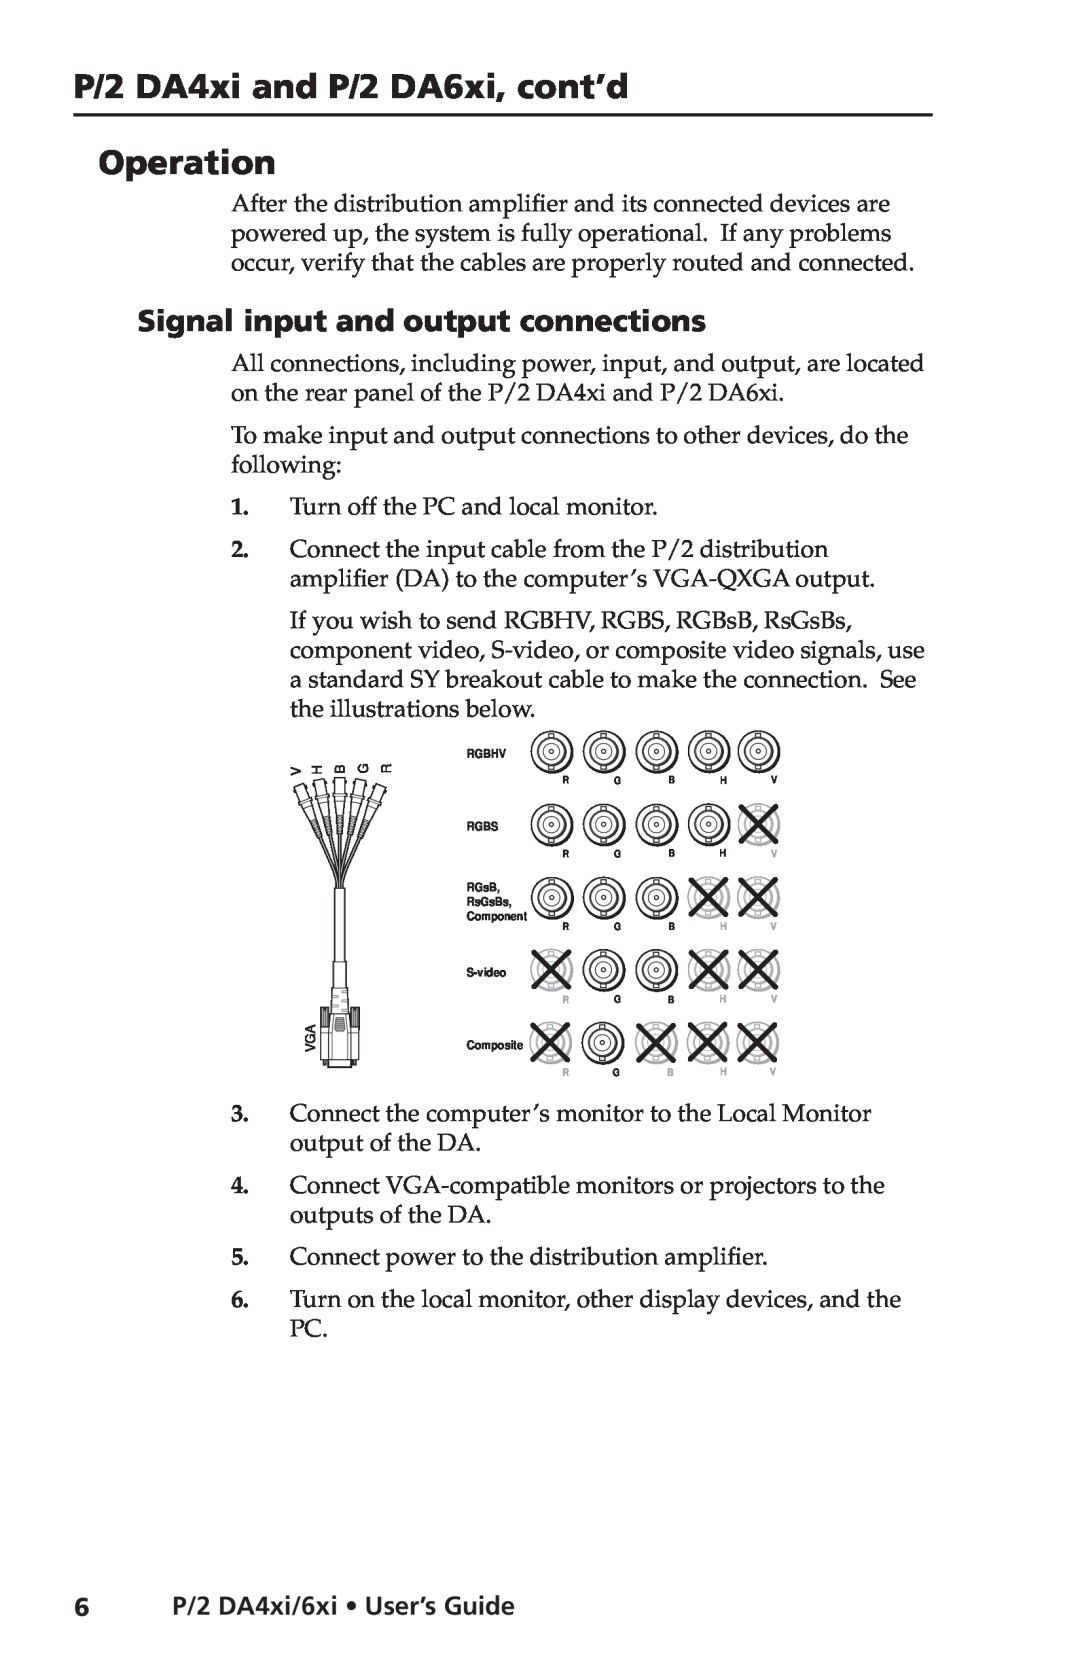 Extron electronic P/2 DA4XI, P/2 DA6XI manual Operation, Signal input and output connections, 6P/2 DA4xi/6xi User’s Guide 